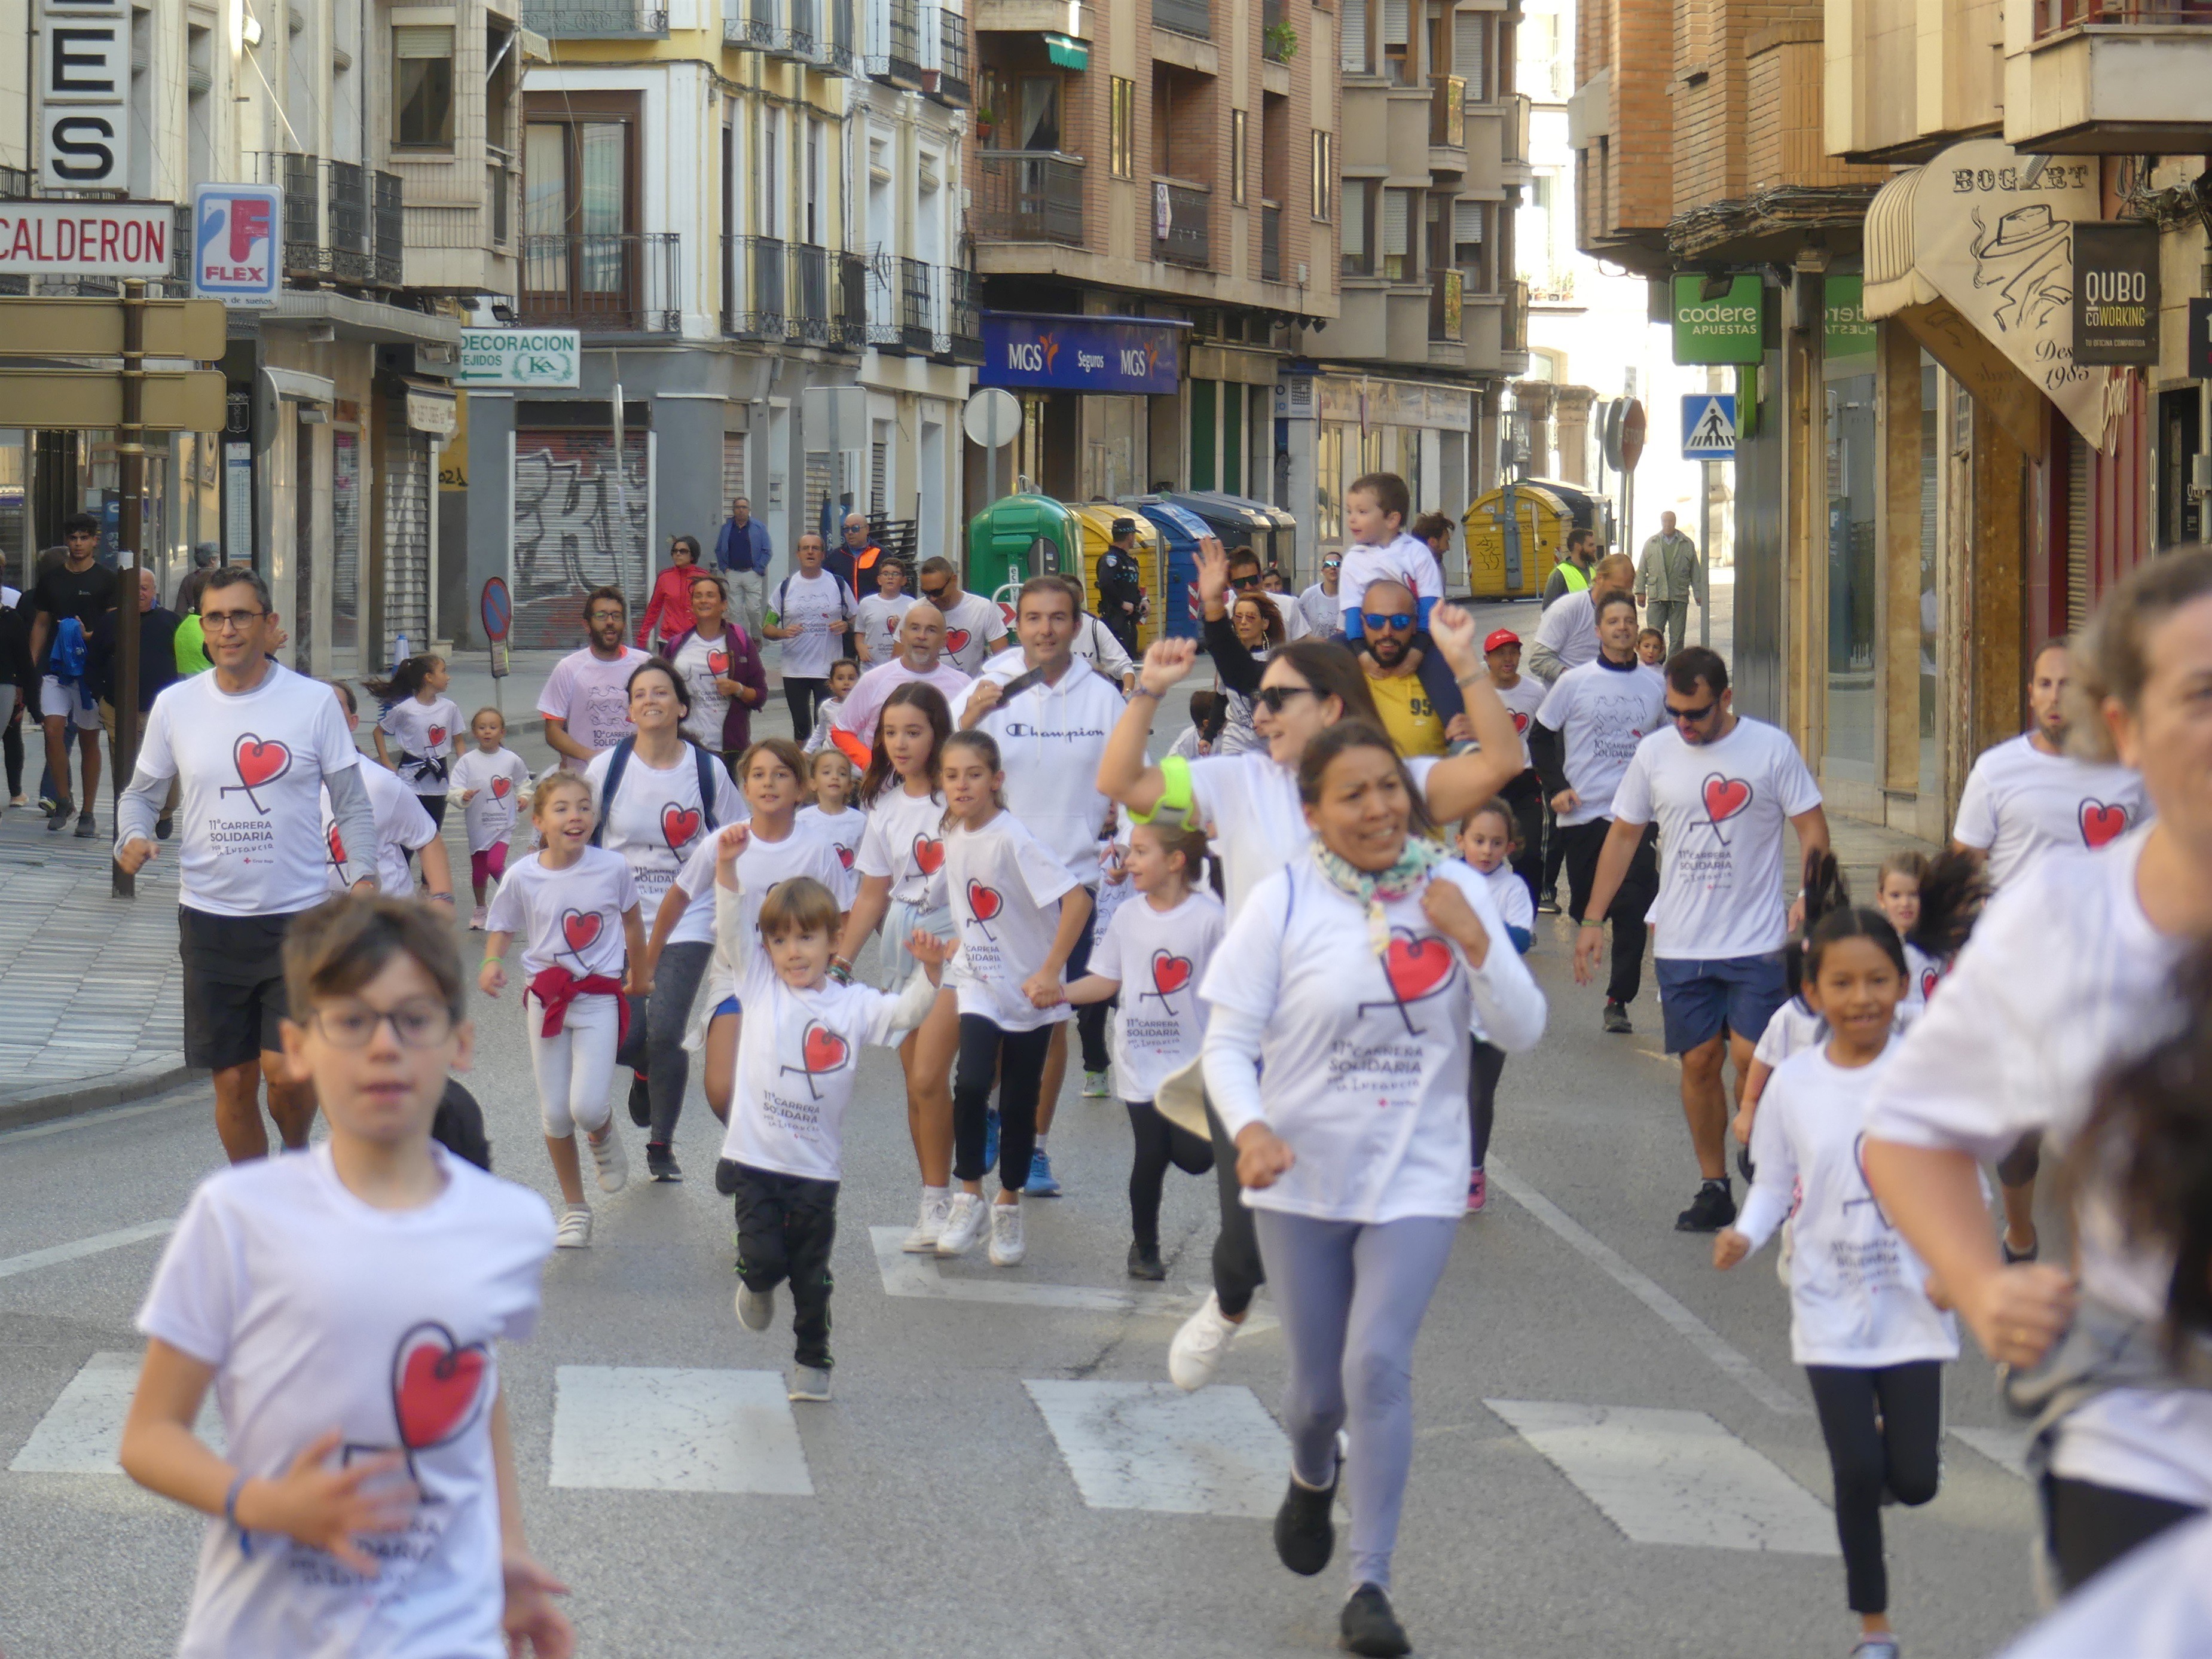 Ndp/ En Torno A 800 Personas Participan En La 11 Carrera Solidaria Por La Infancia Organizada Por Cruz Roja En Cuenca